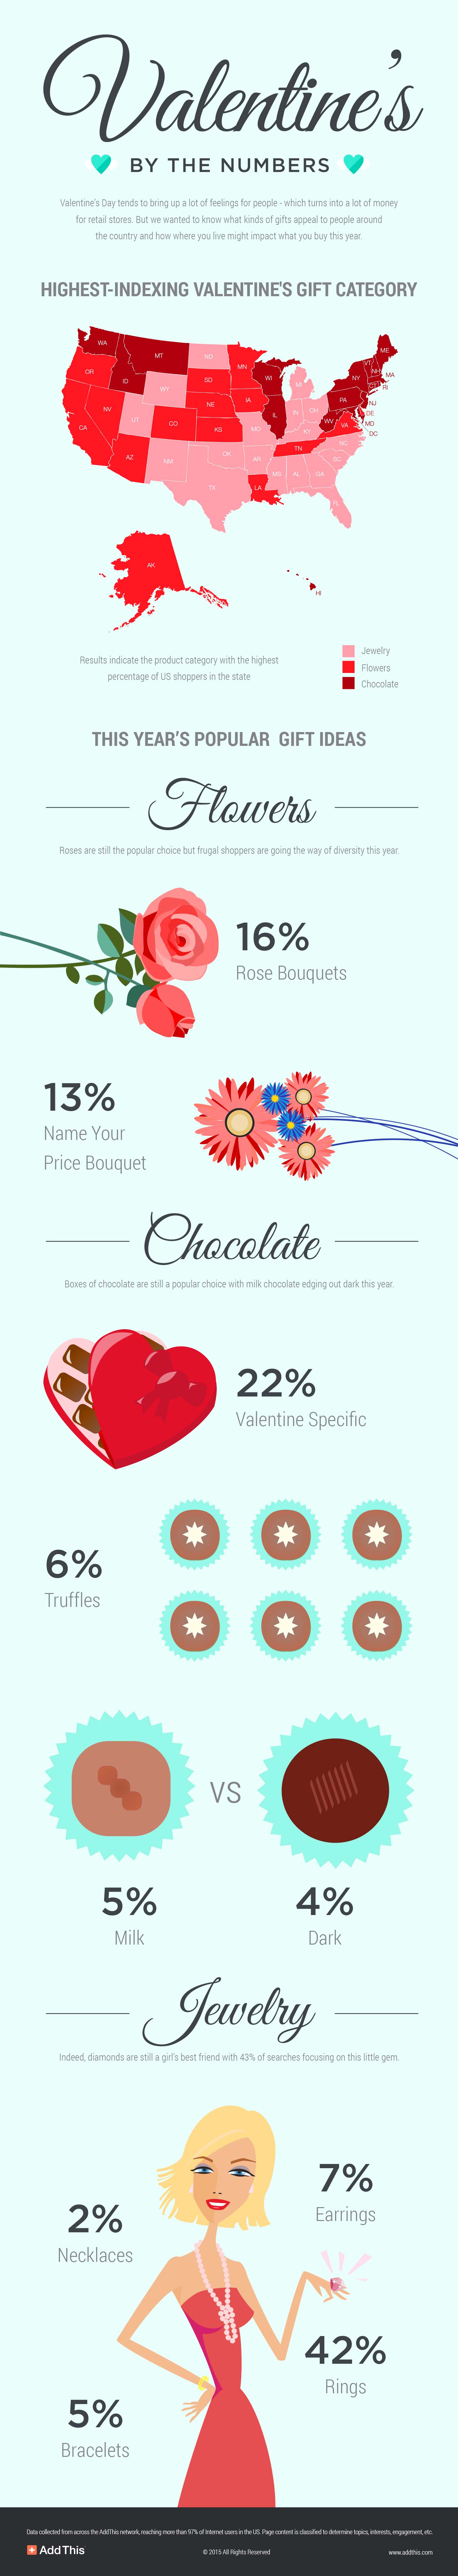 Valentine's Day 2015 Data